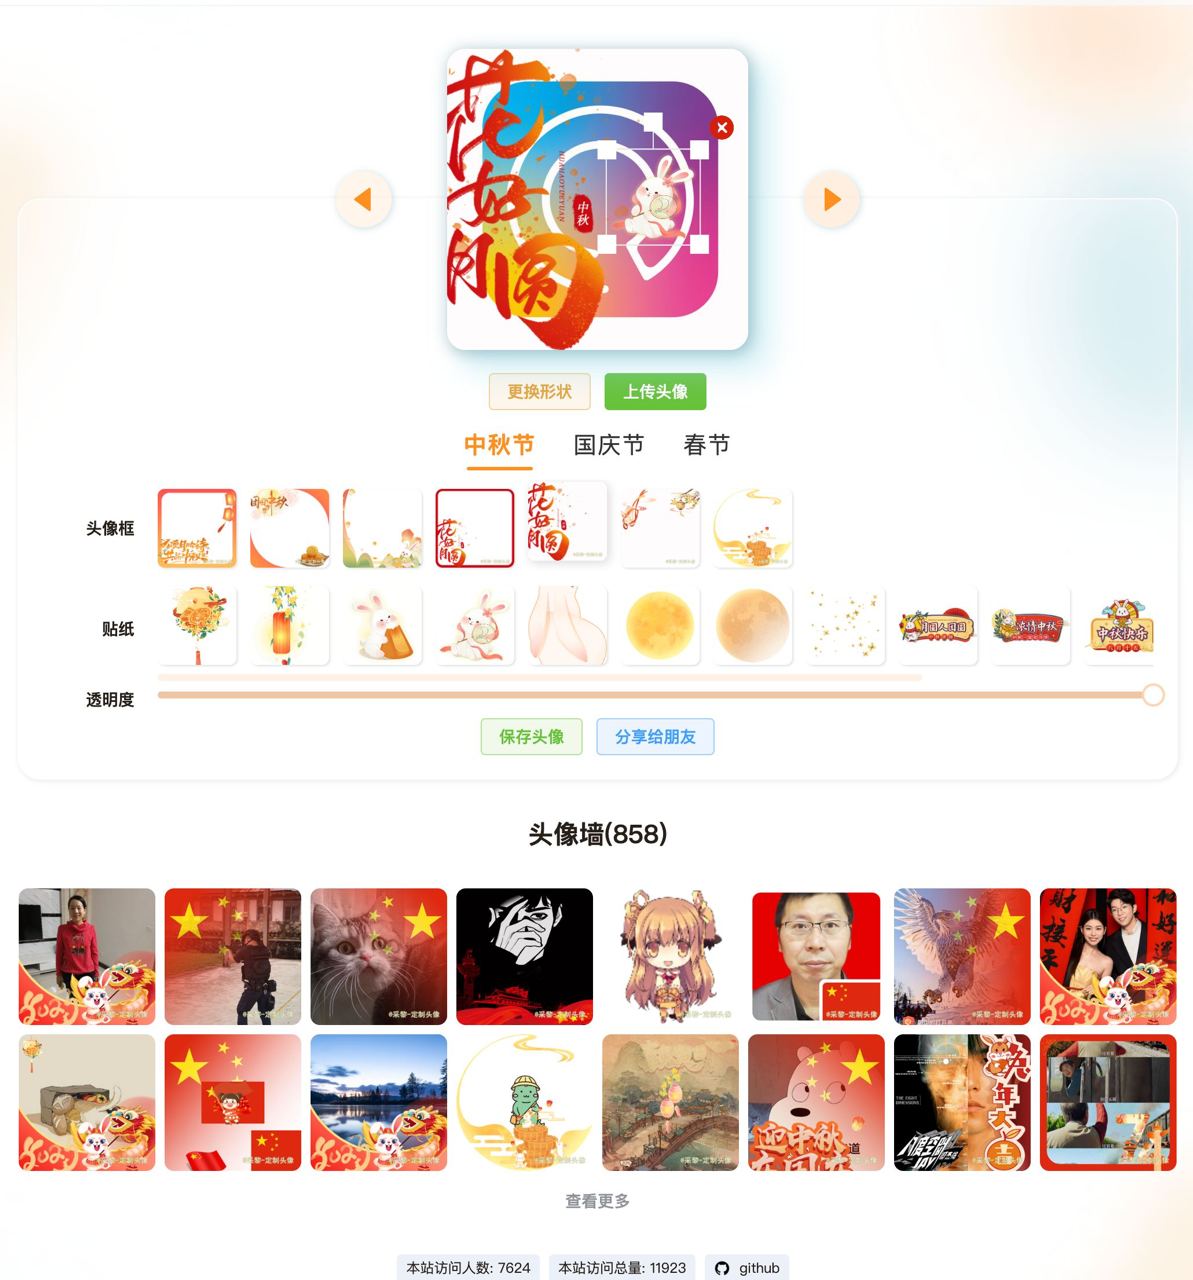 新年头像生成网站源码 快速定制中国传统节日头像，国庆国旗头像。